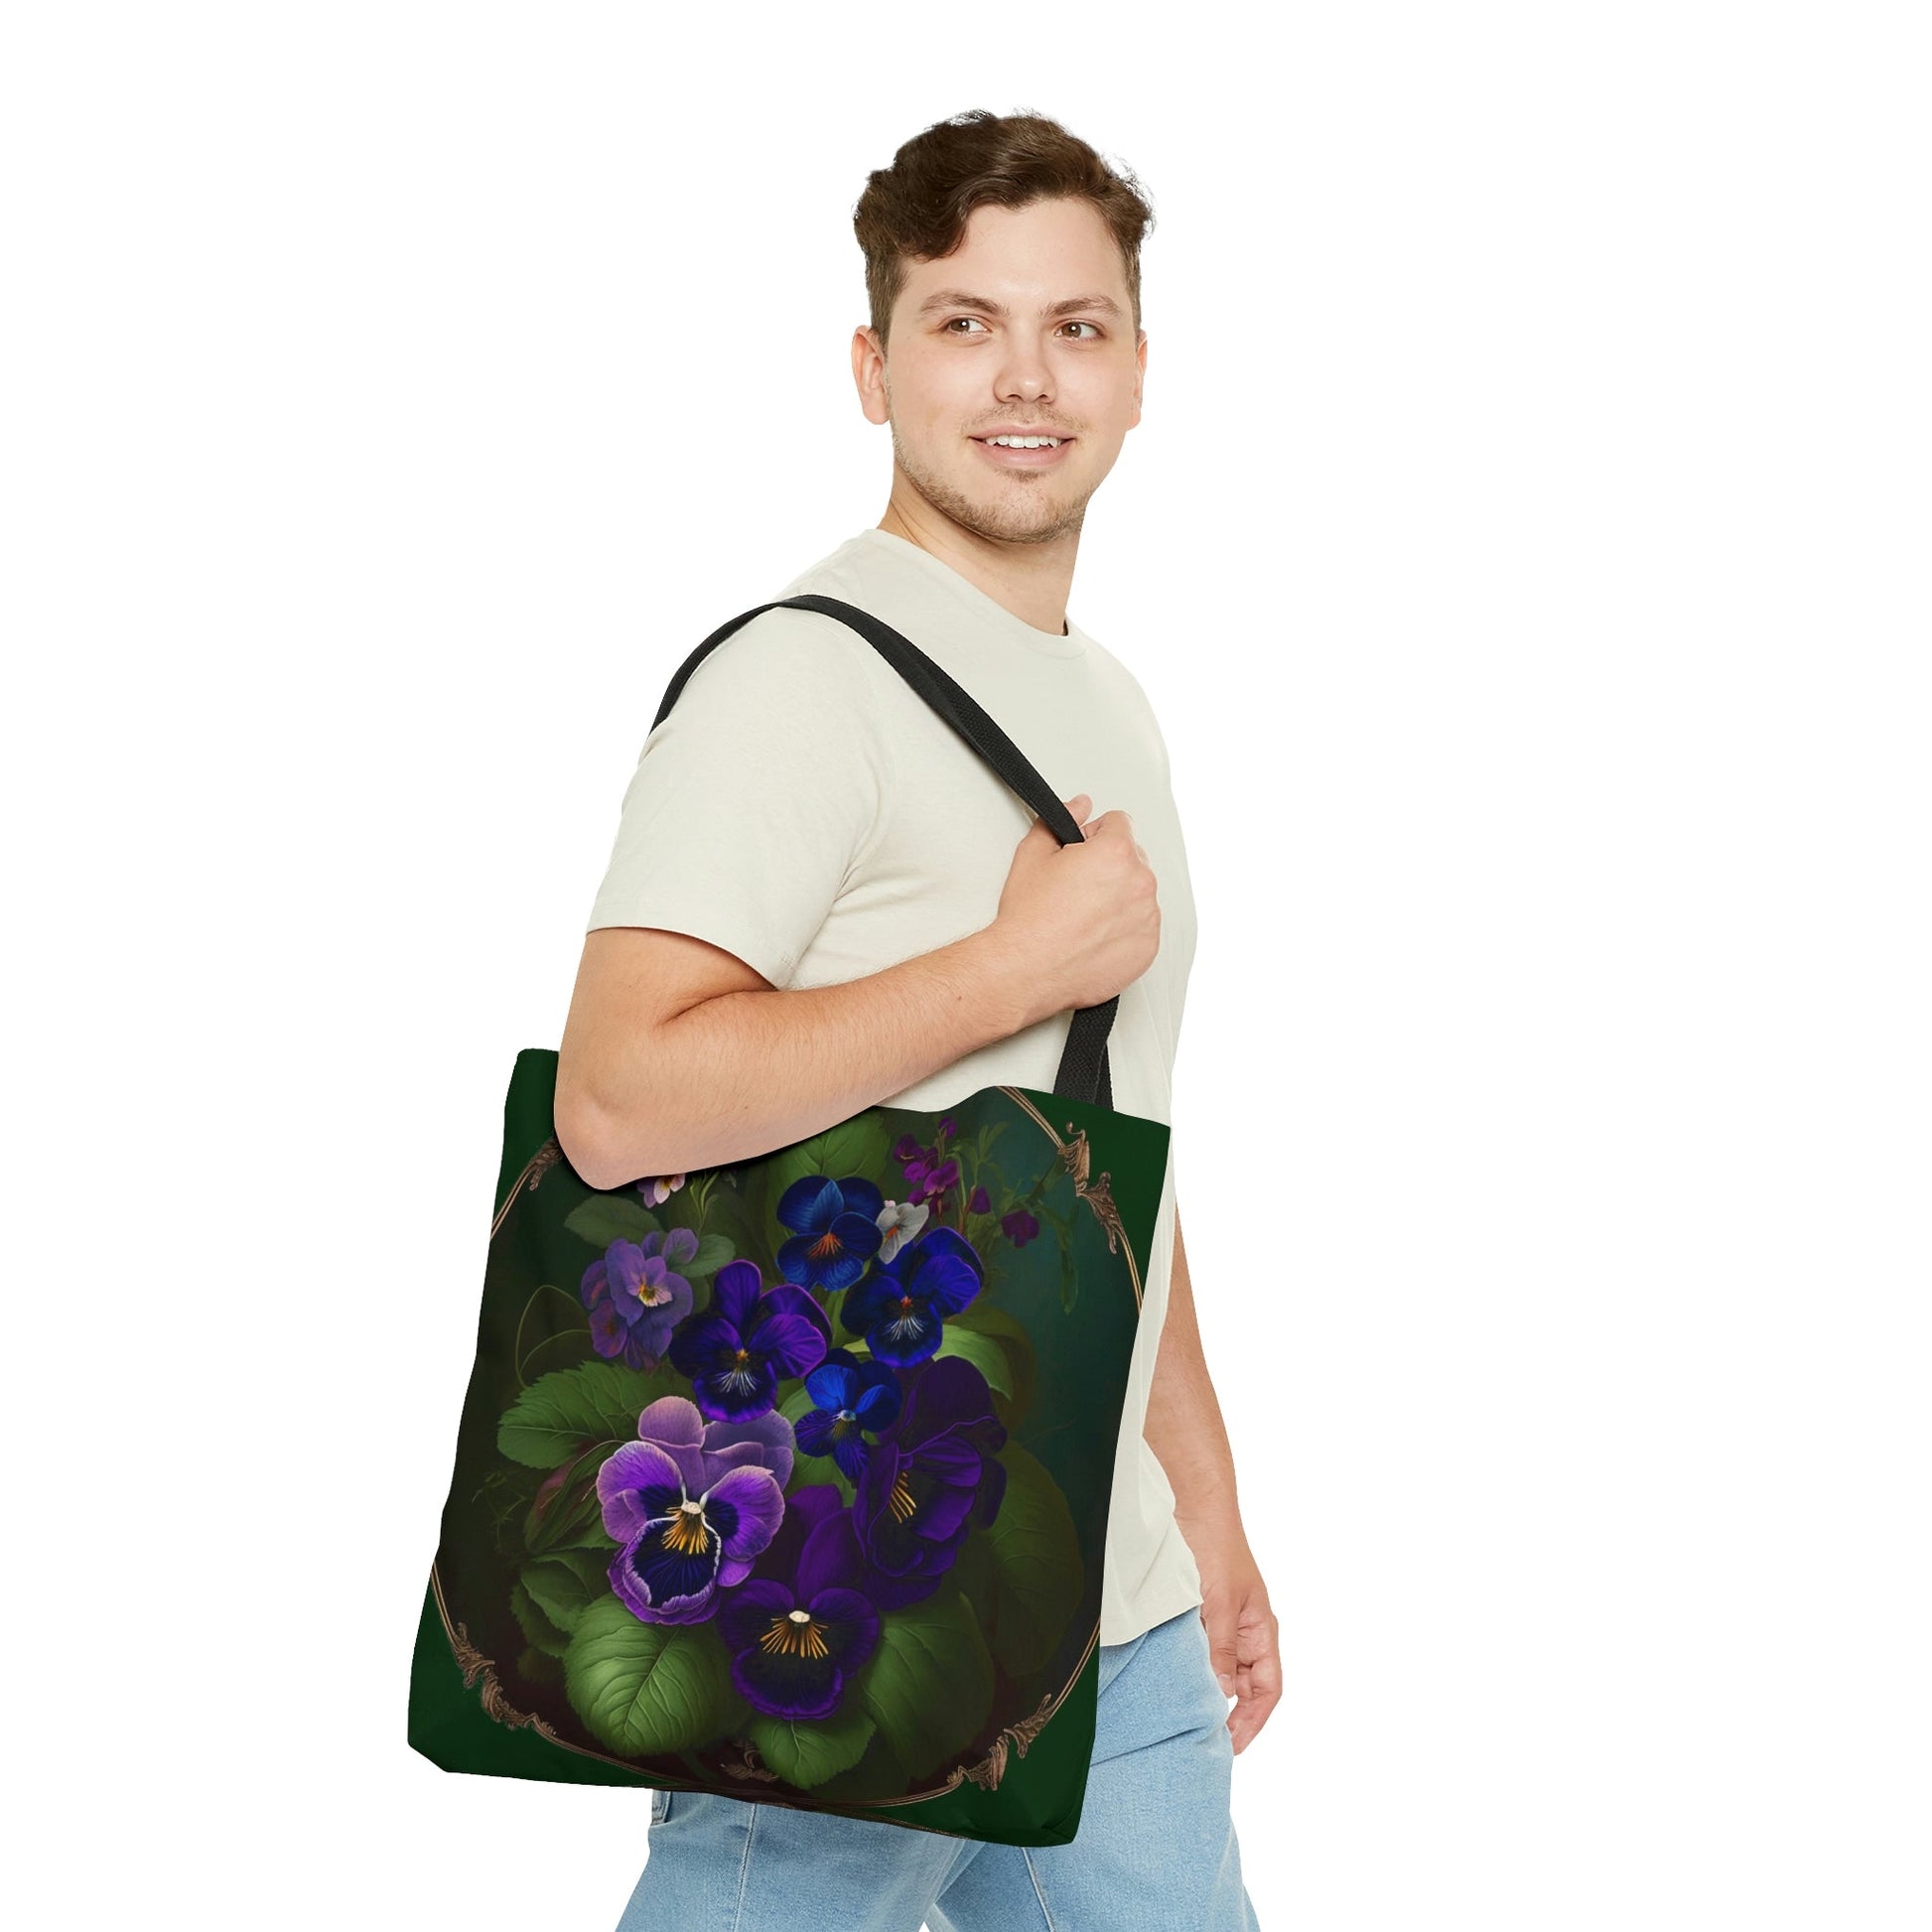 Violet Tote Bag - Beautiful Vintage Floral Design of Violets - February Birth Flower